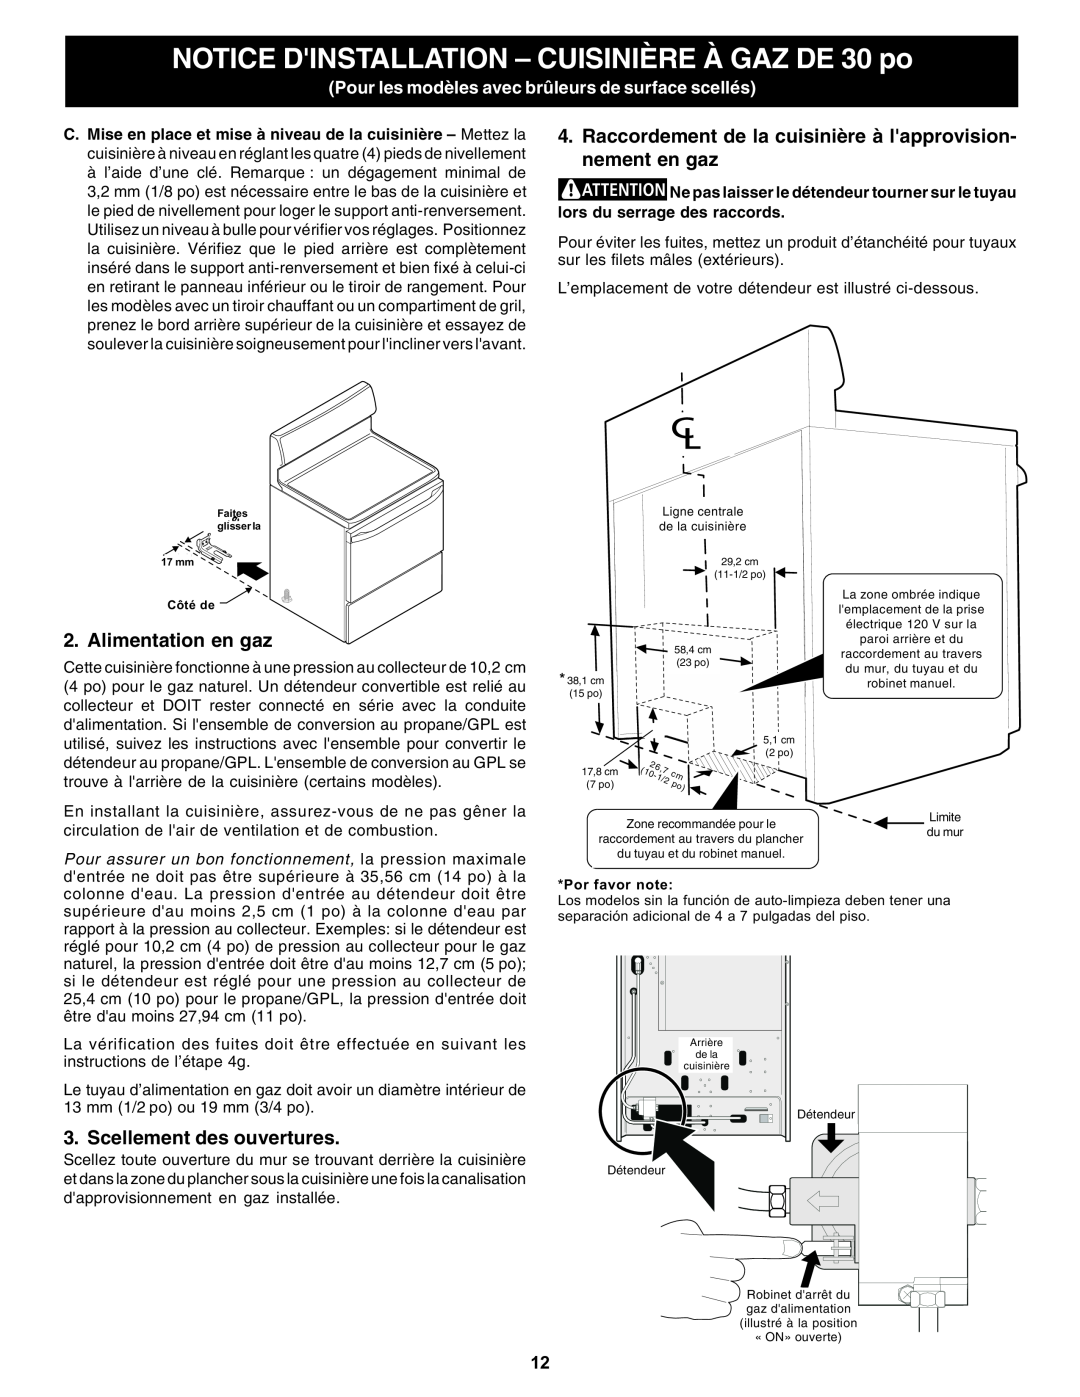 Bosch Appliances HGS5053UC manual Alimentation en gaz, Scellement des ouvertures, Por favor note 